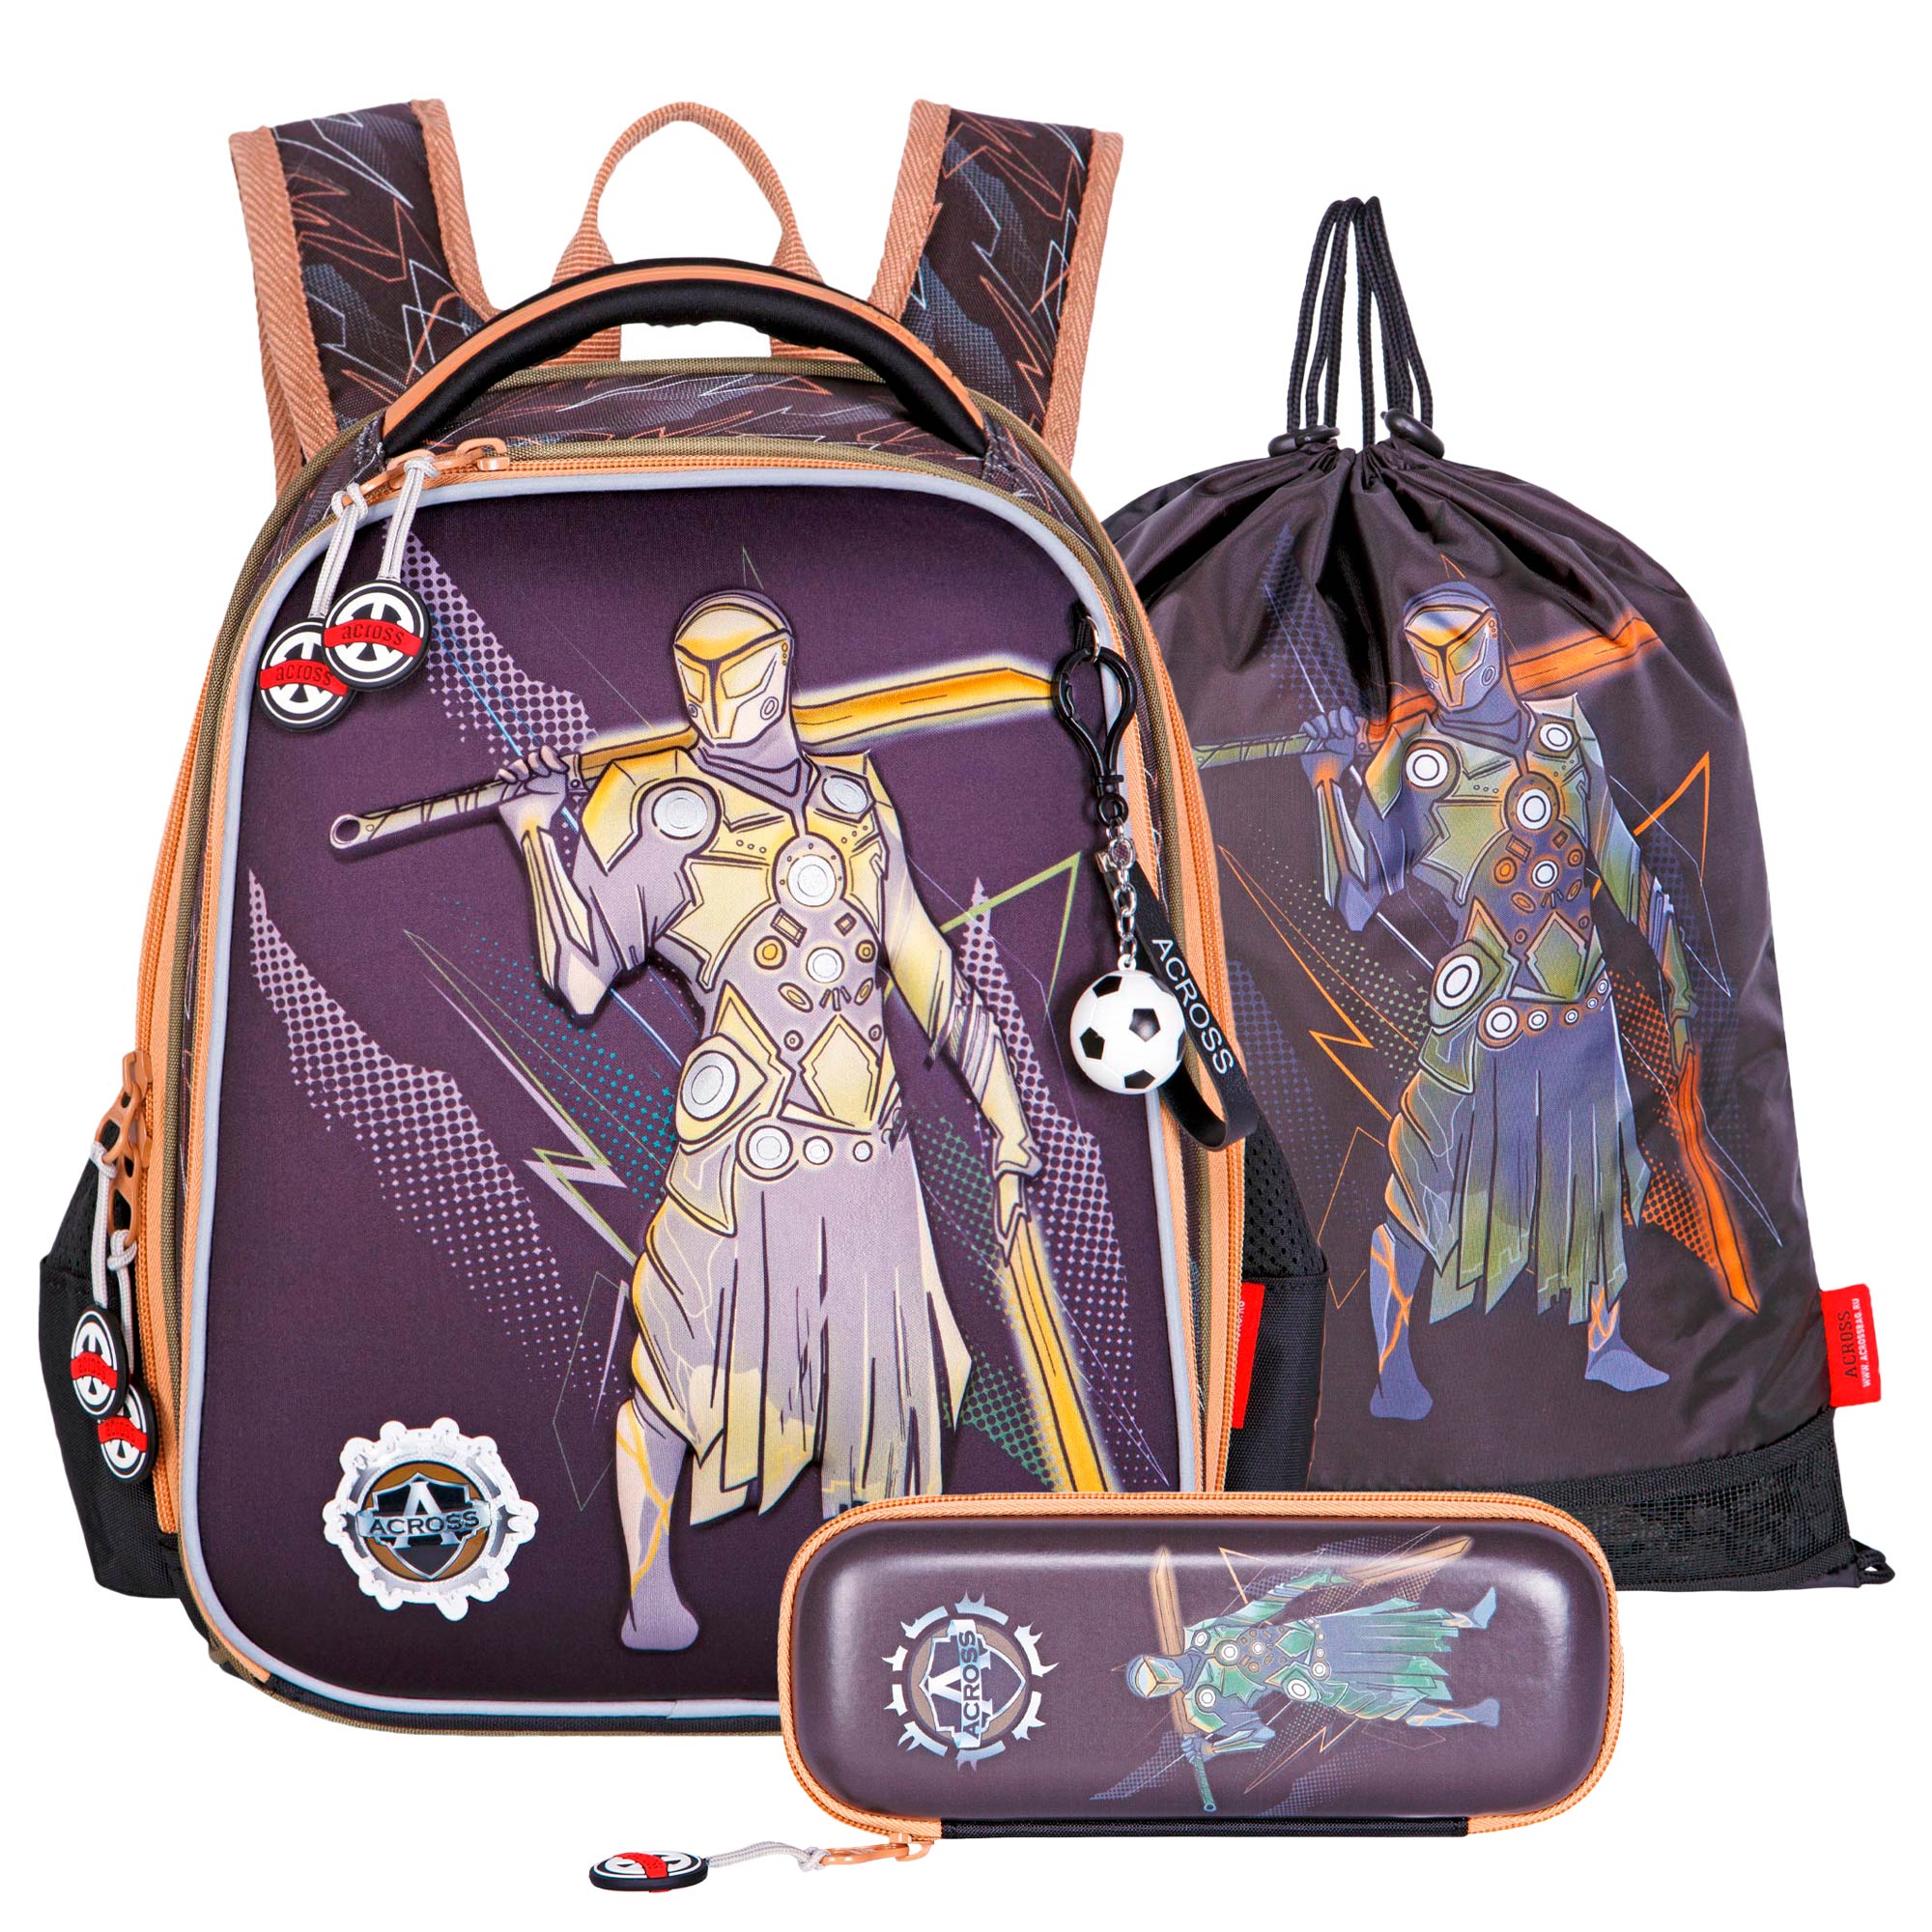 Рюкзак школьный ACROSS с наполнением: мешочек для обуви каркасный пенал и брелок - фото 1